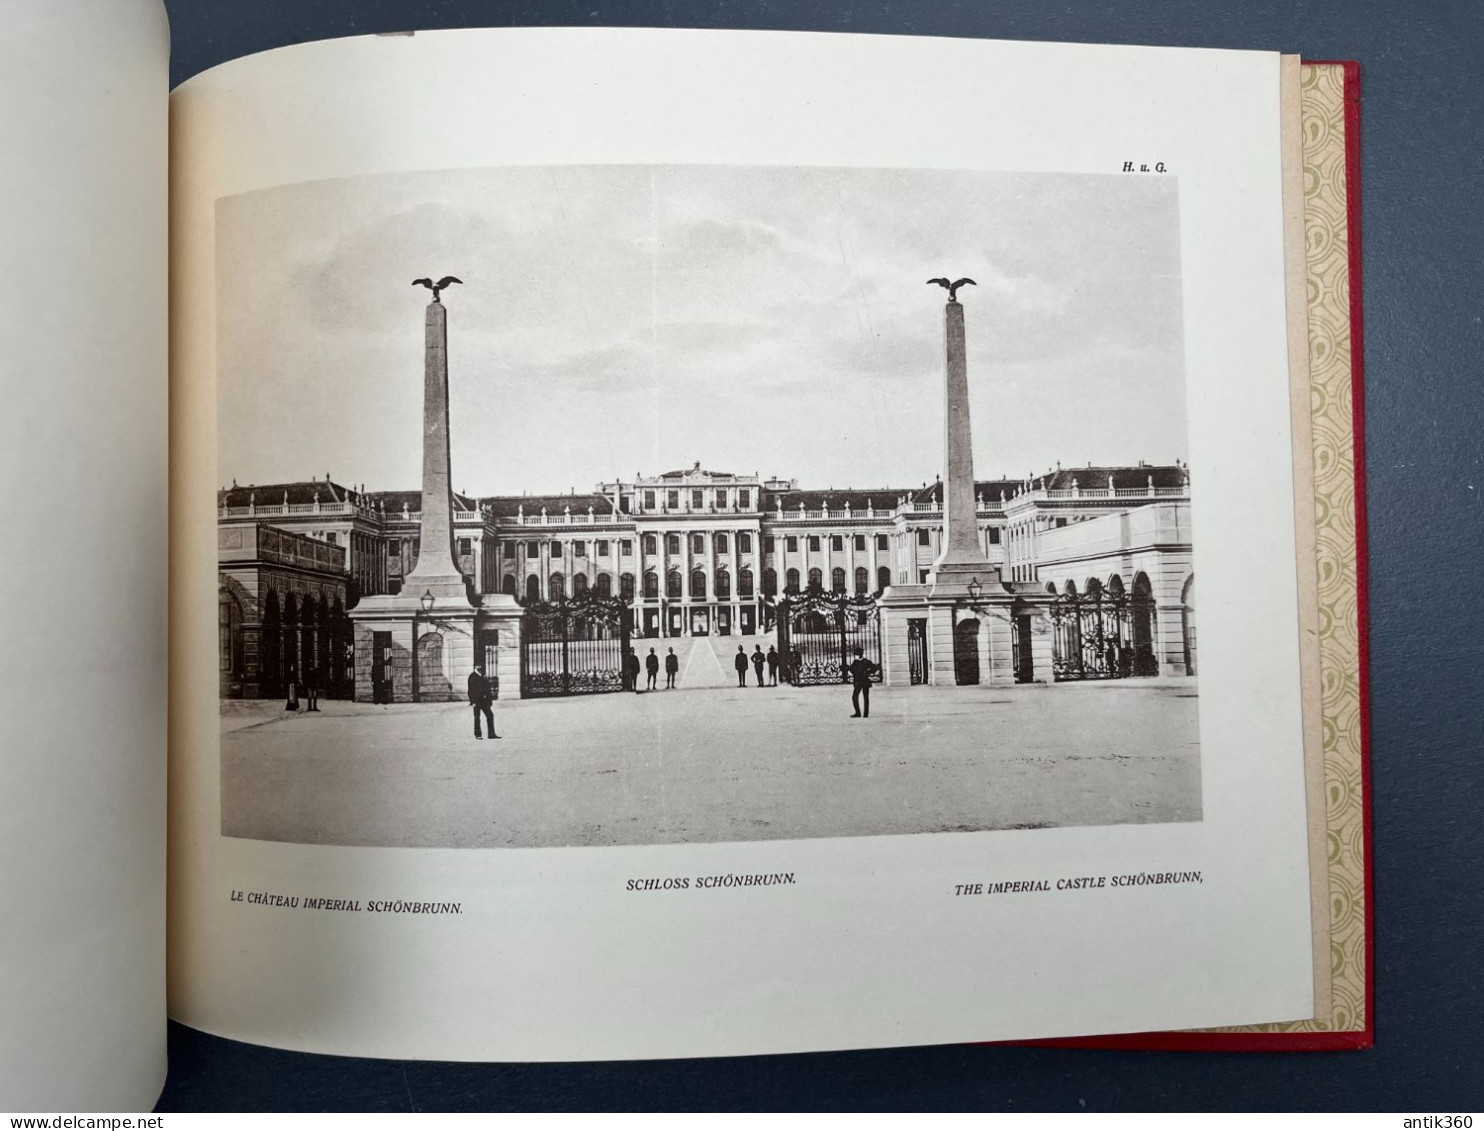 Ancien Album Photogravures Monument de Vienne Autriche - Neuesles Monumental Album von Wien 1919